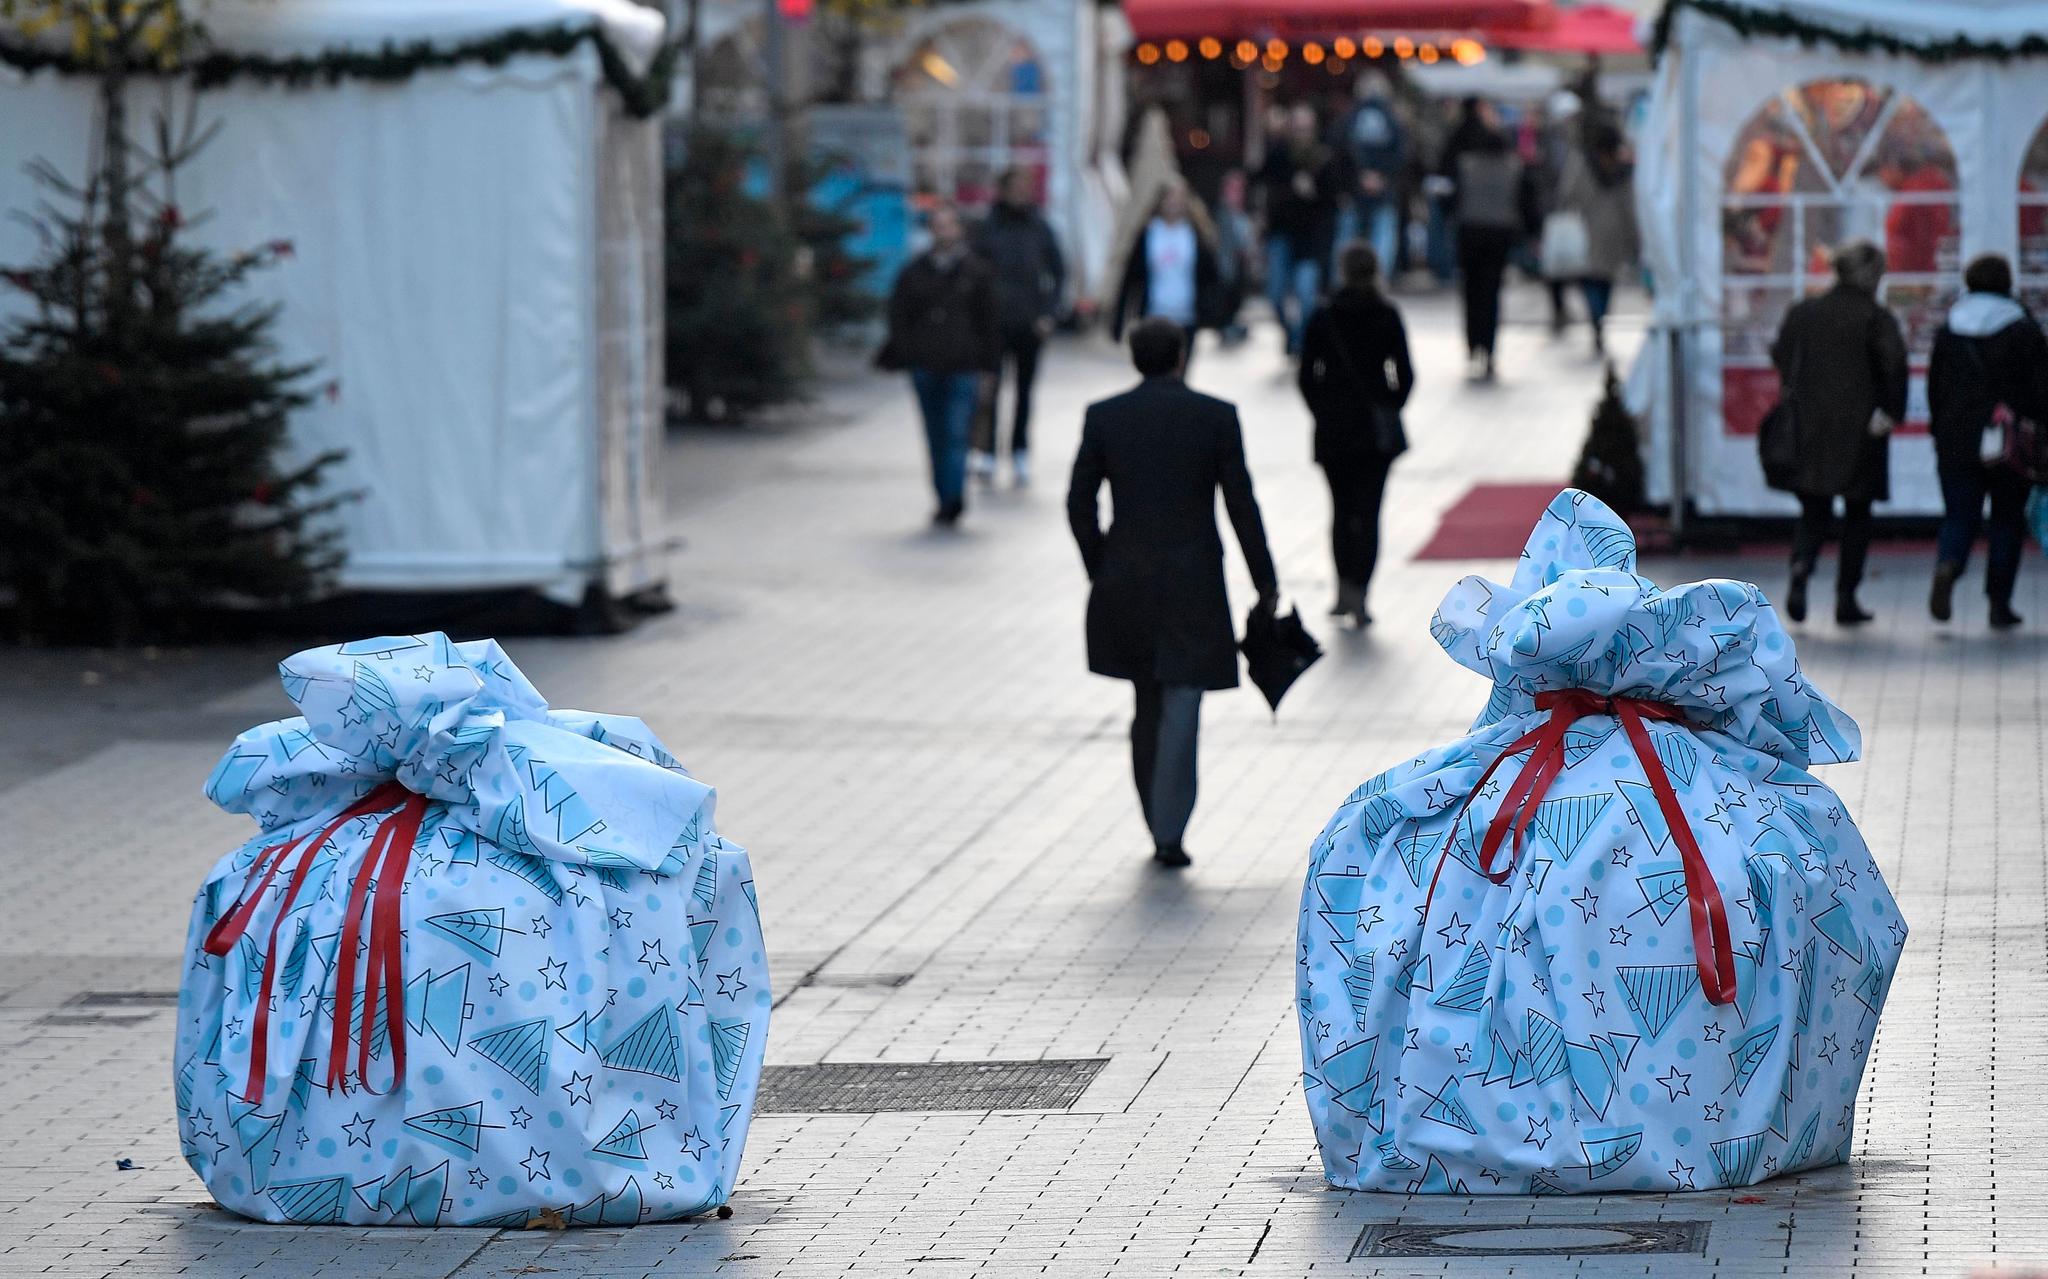 Veisperringer pakket inn som julegaver sikrer julemarkedet i byen Bochum i Tyskland.